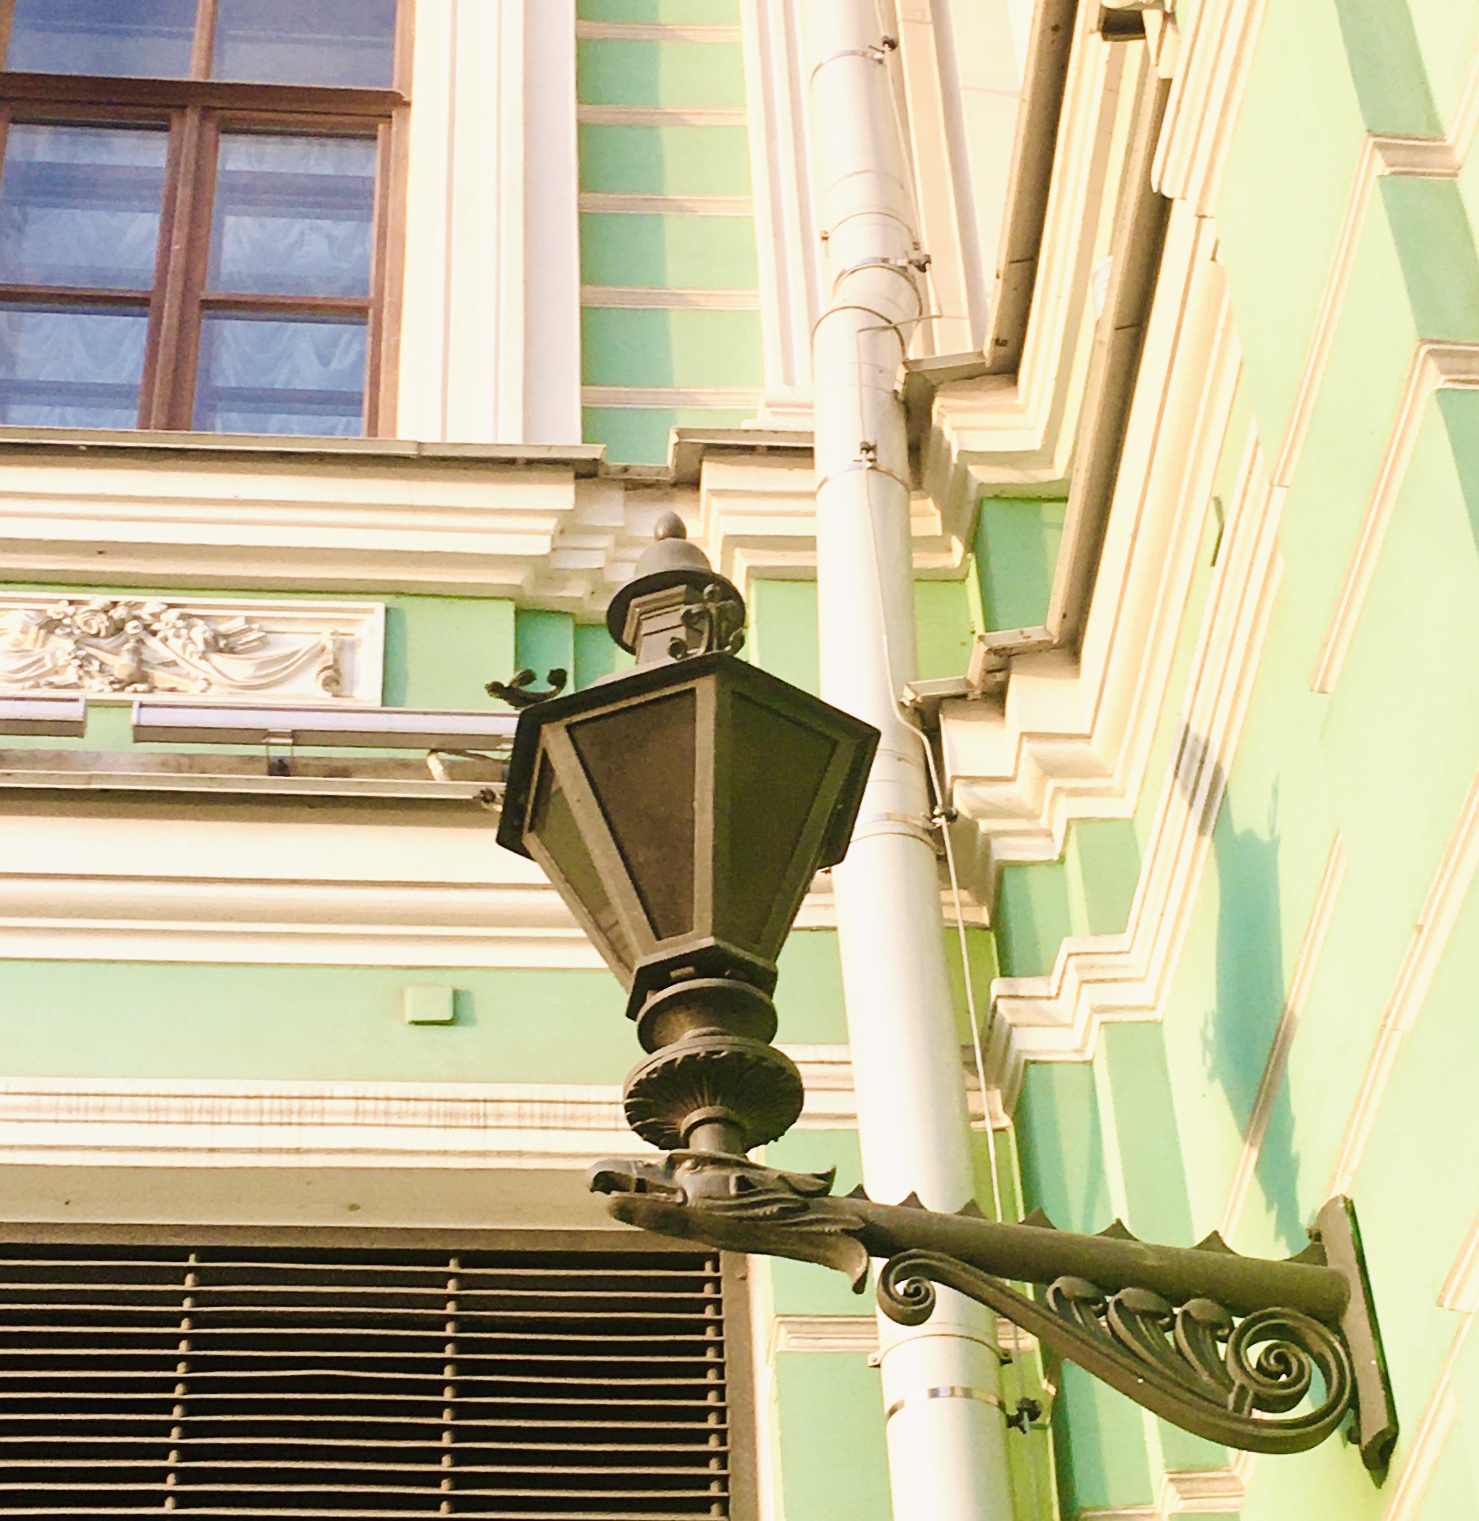 фонари санкт петербурга фото красивые